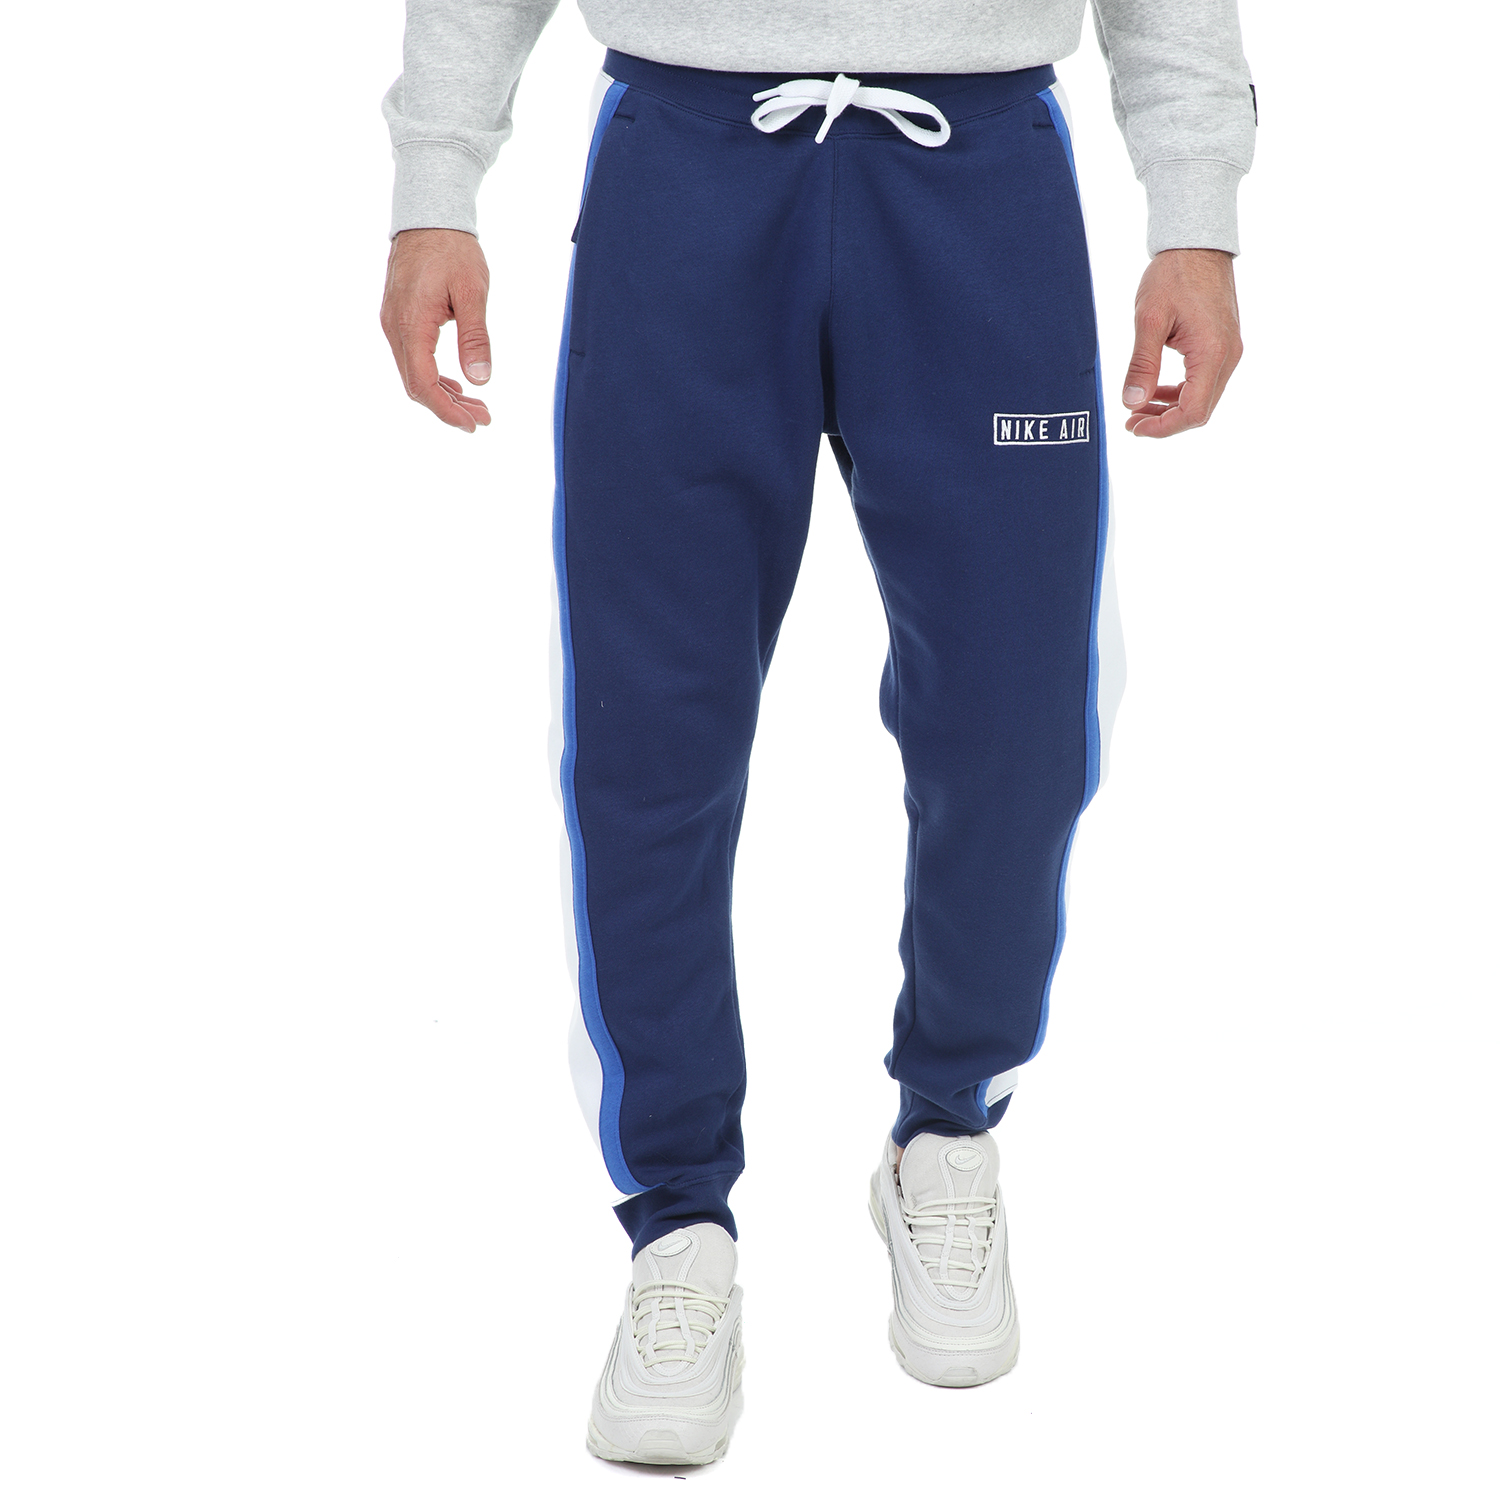 Ανδρικά/Ρούχα/Αθλητικά/Φόρμες NIKE - Ανδρικό παντελόνι φόρμας NIKE NSW NIKE AIR PANT FLC μπλε